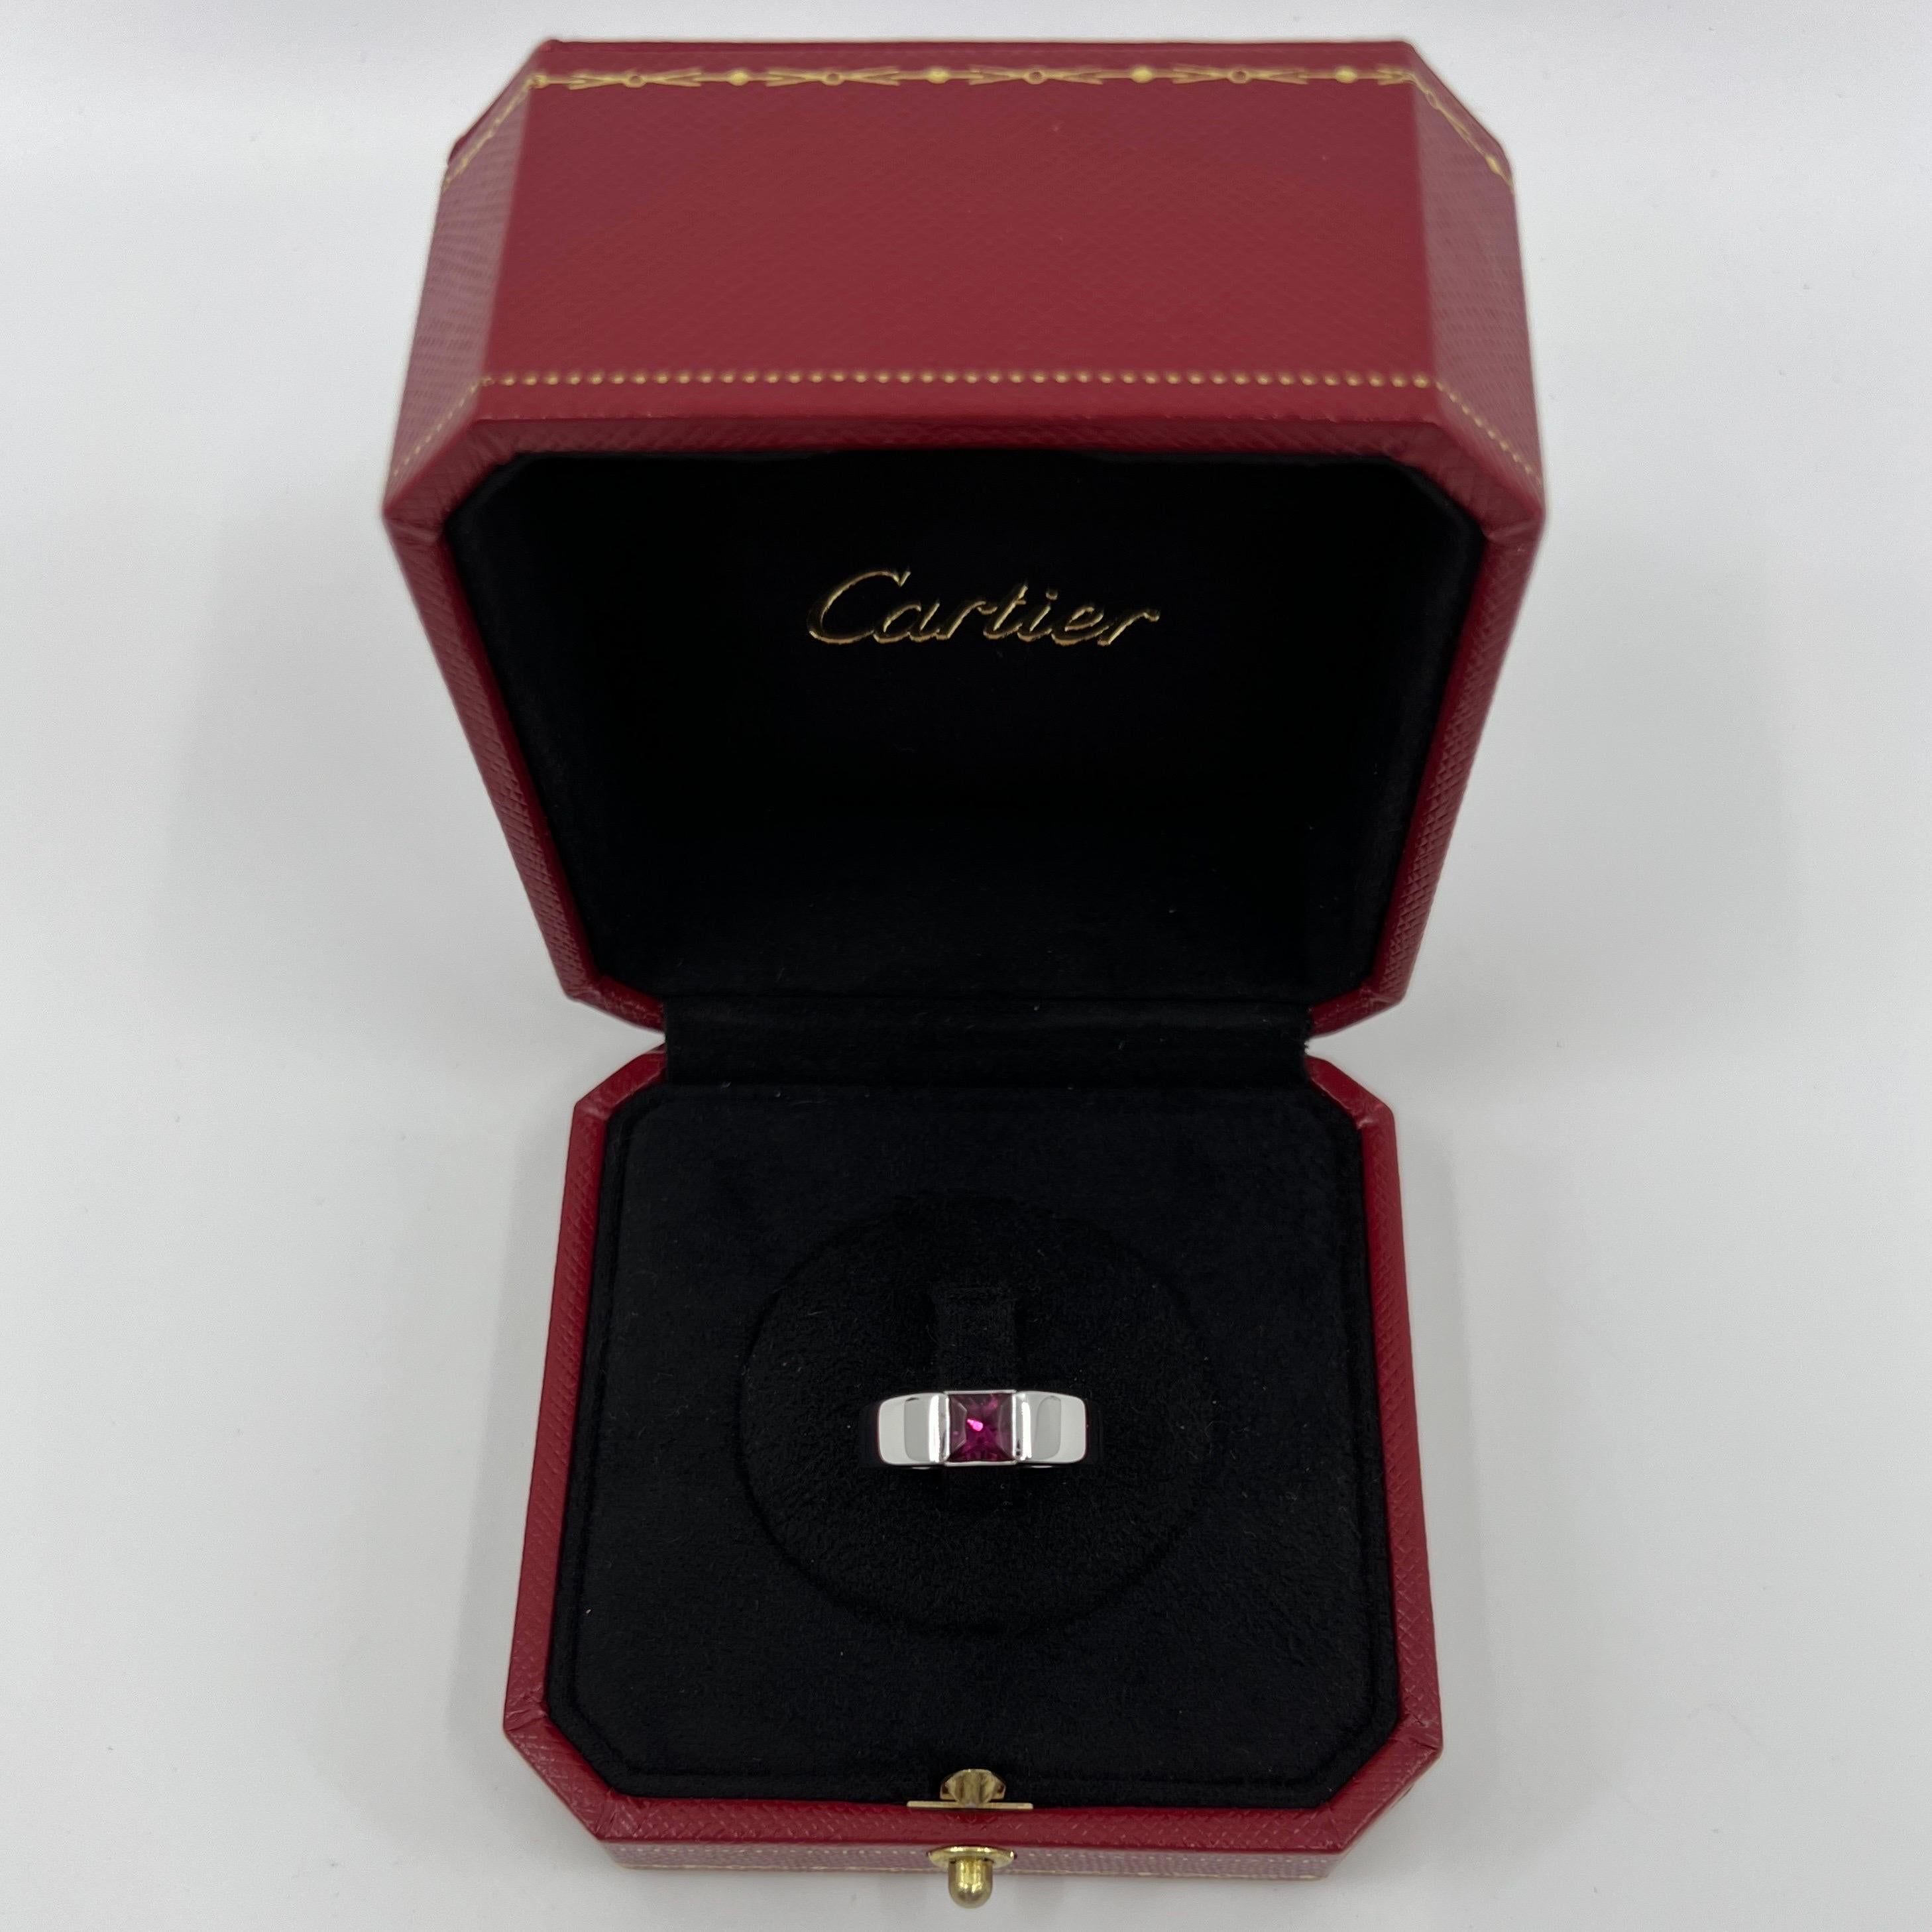 Rare Vintage Cartier Pink Purple Rhodolite Garnet 18 Karat White Gold Tank Ring.

Magnifique bague en or blanc ornée d'un grenat rhodolite rose vif de 5 mm serti clos. Les maisons de haute joaillerie comme Cartier n'utilisent que les pierres les